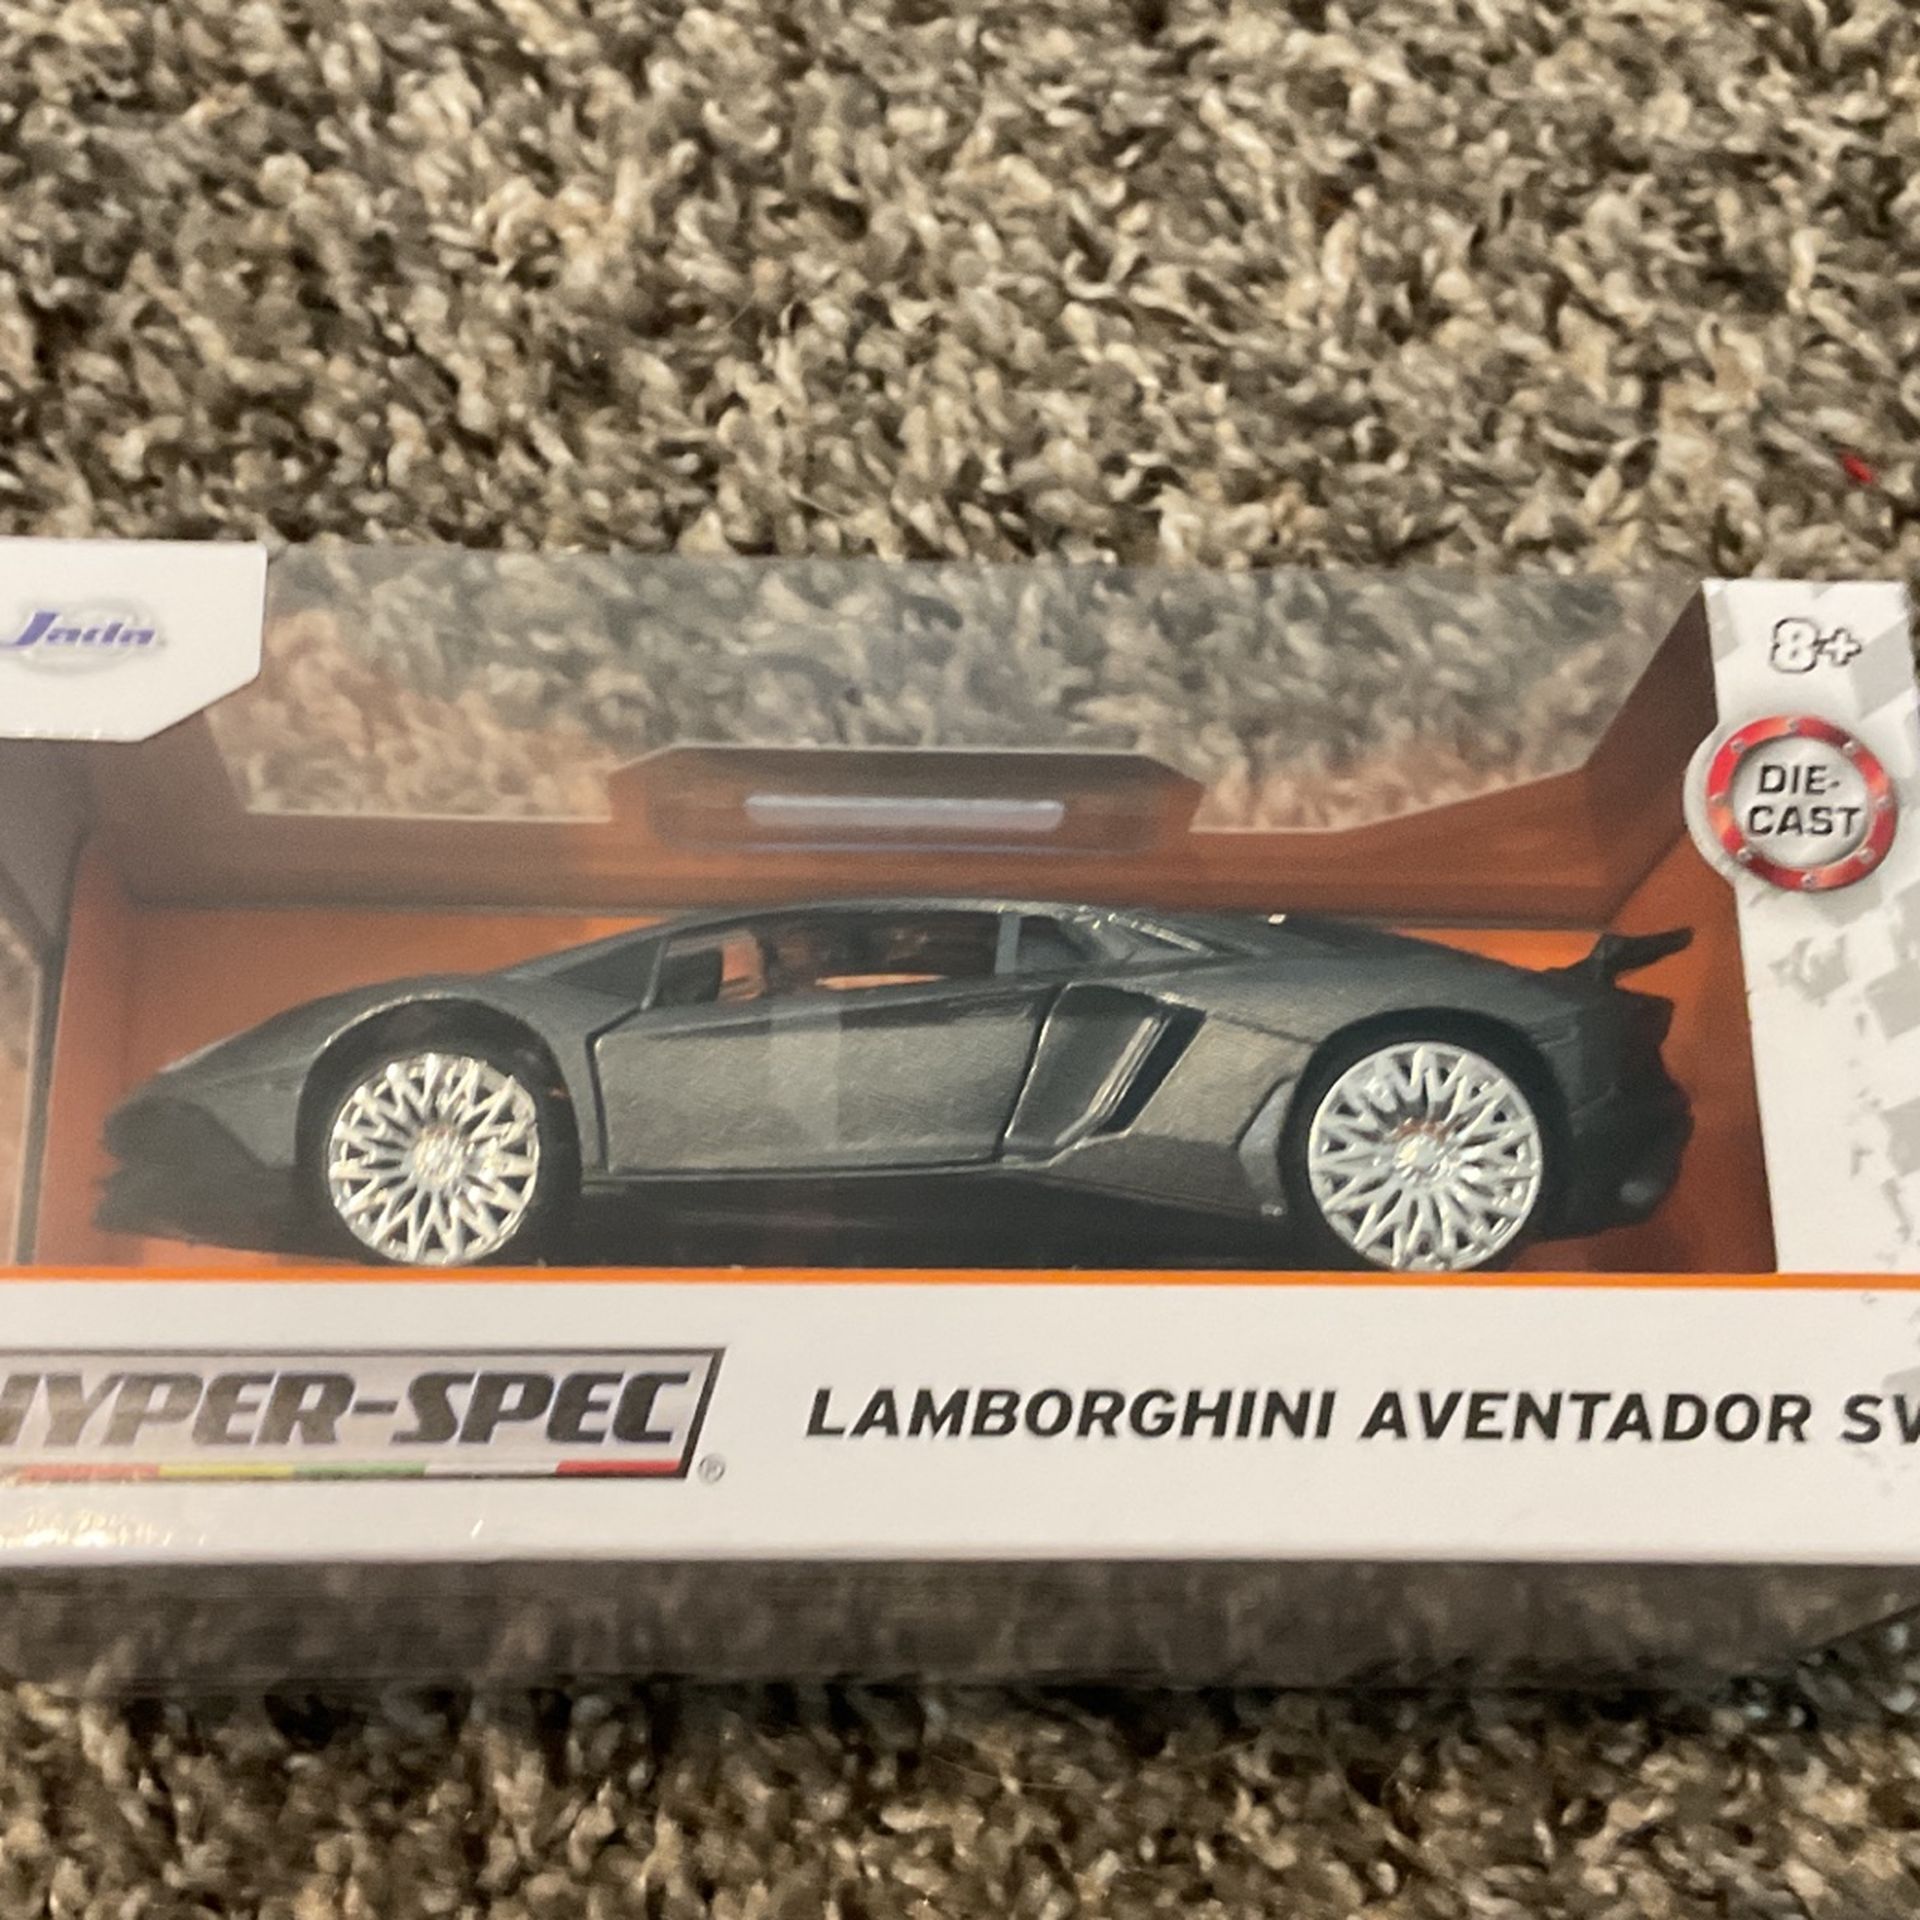 Lamborghini Aventador Sv